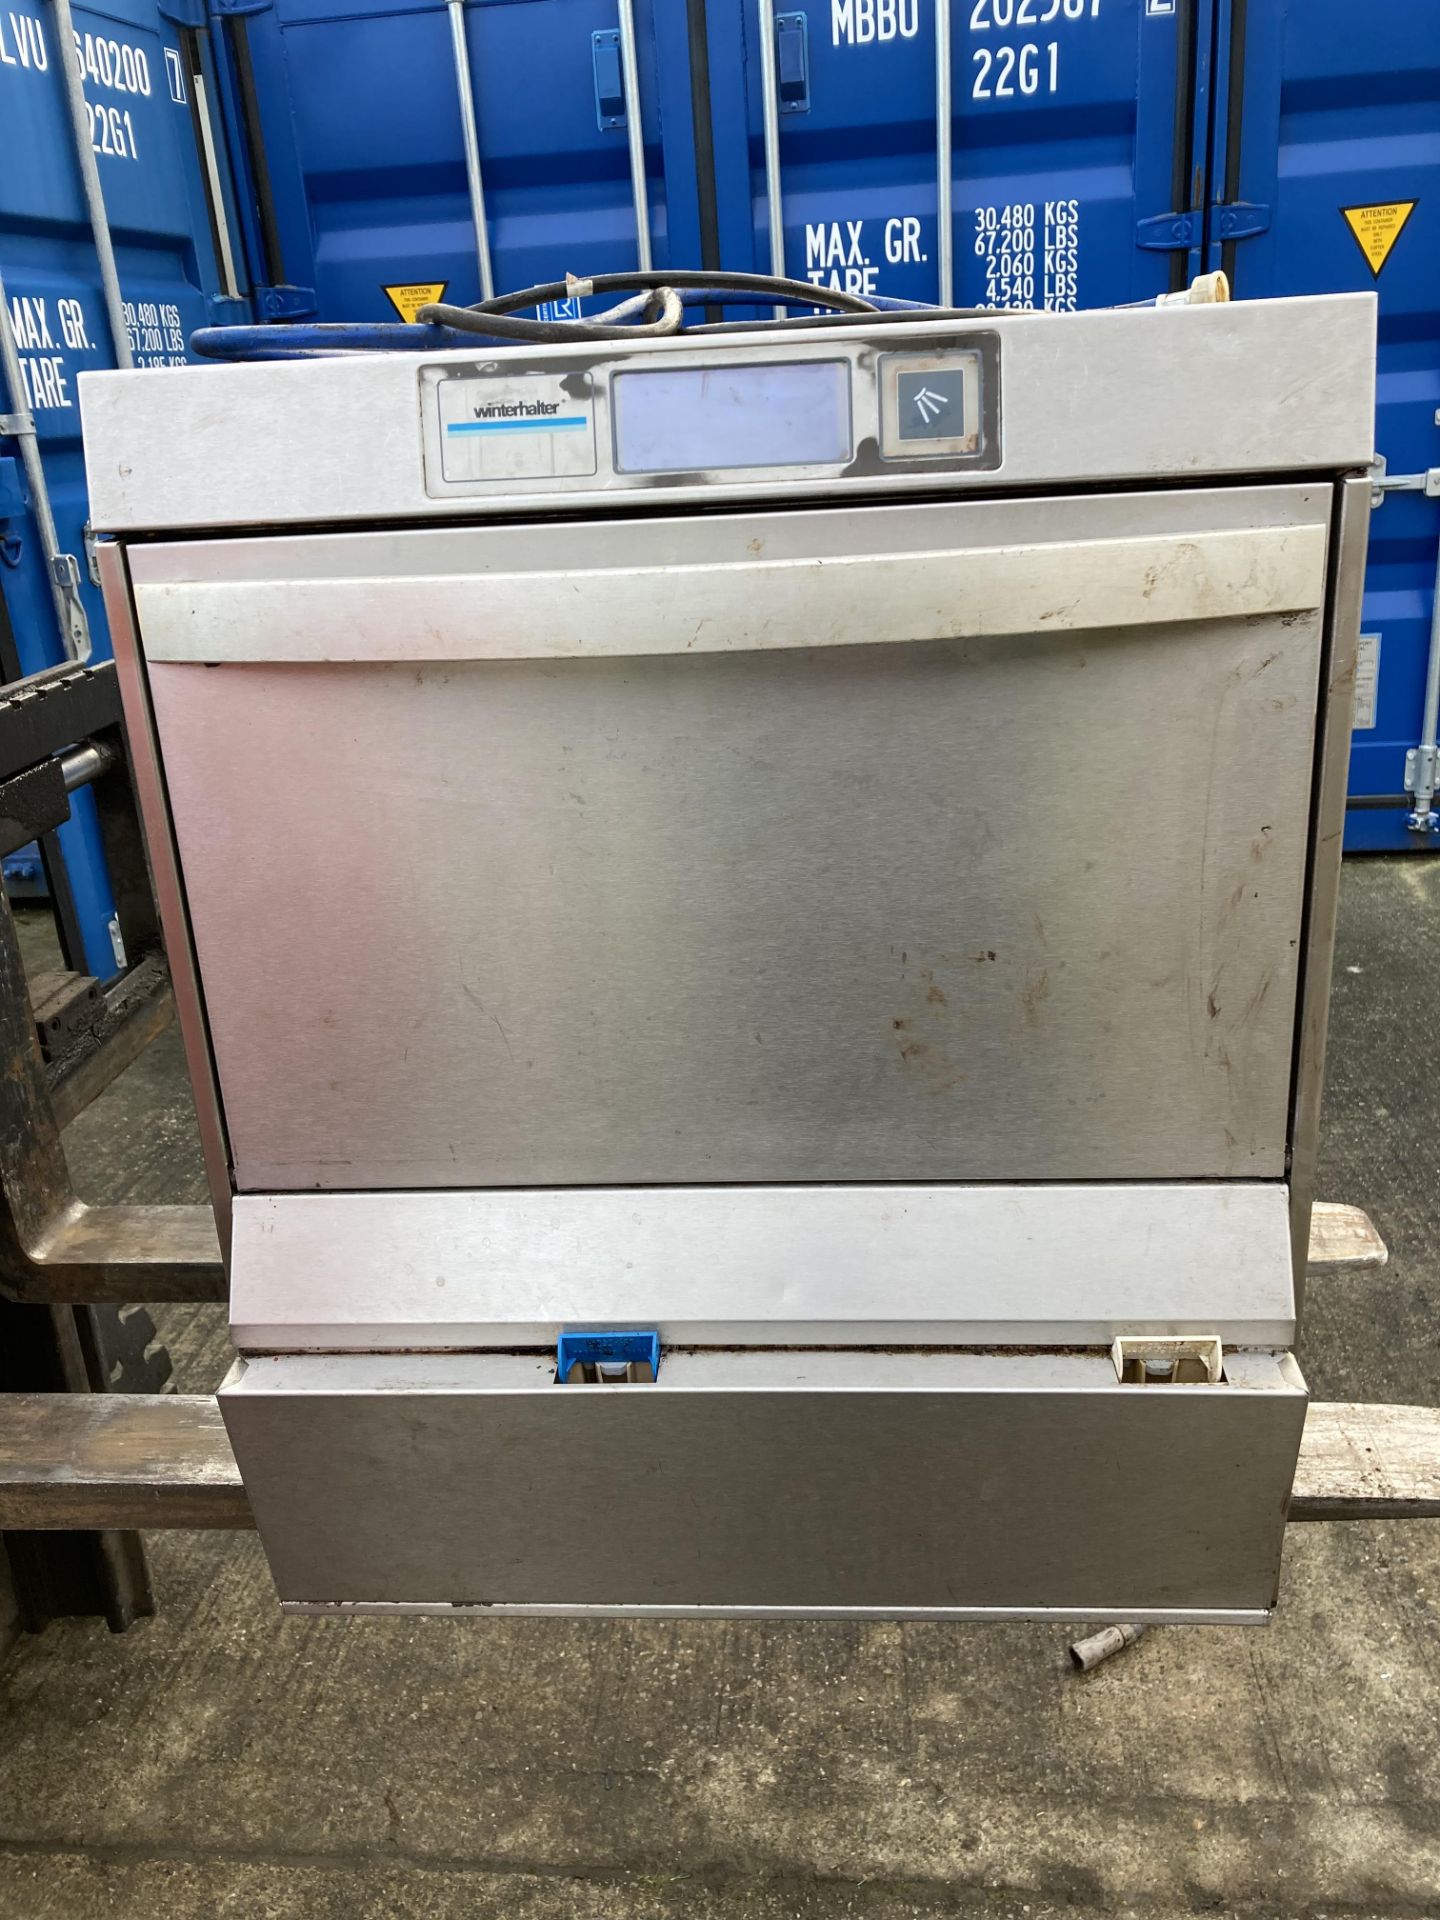 Winterhalter stainless steel commercial dishwasher (240v),